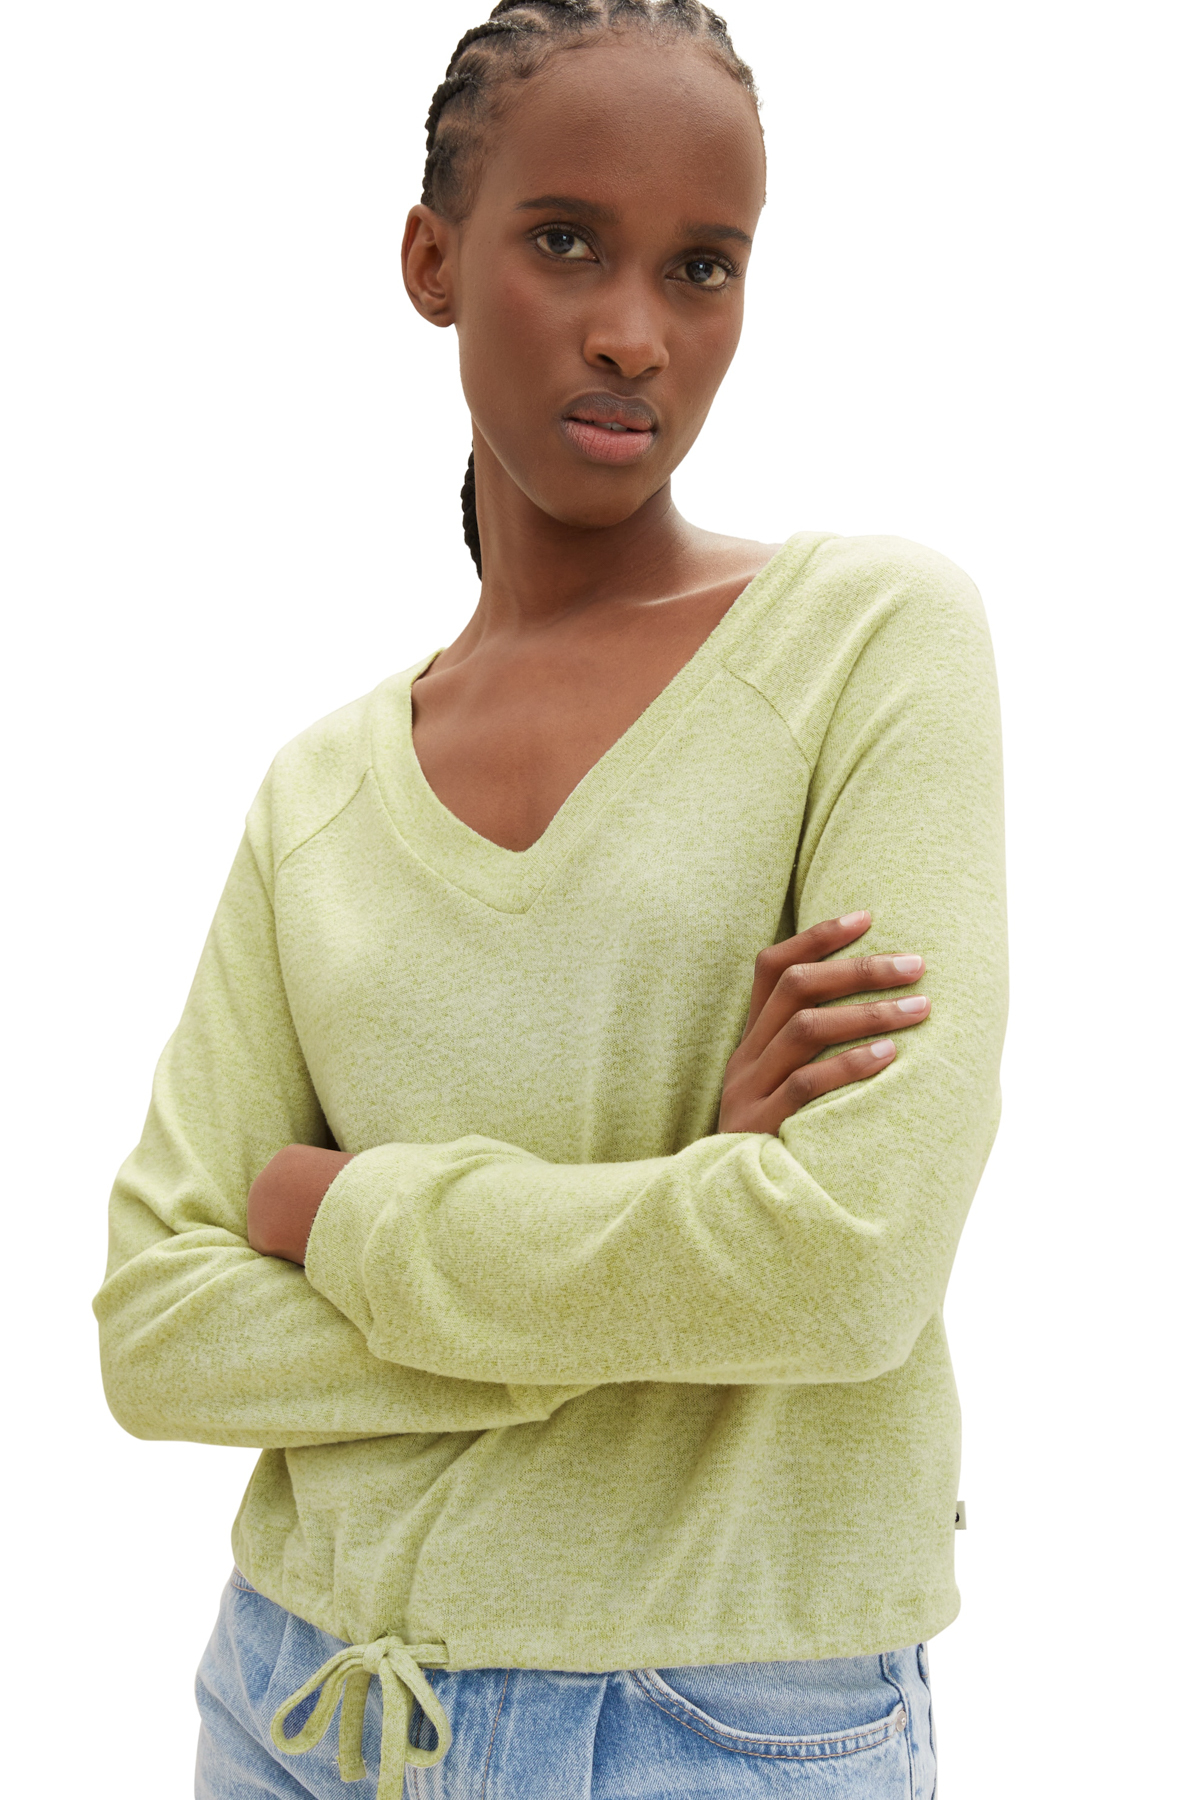 Футболка Женская/Девочка уютная футболка реглан Tom Tailor Denim, зеленый пуловер tom tailor размер s зеленый